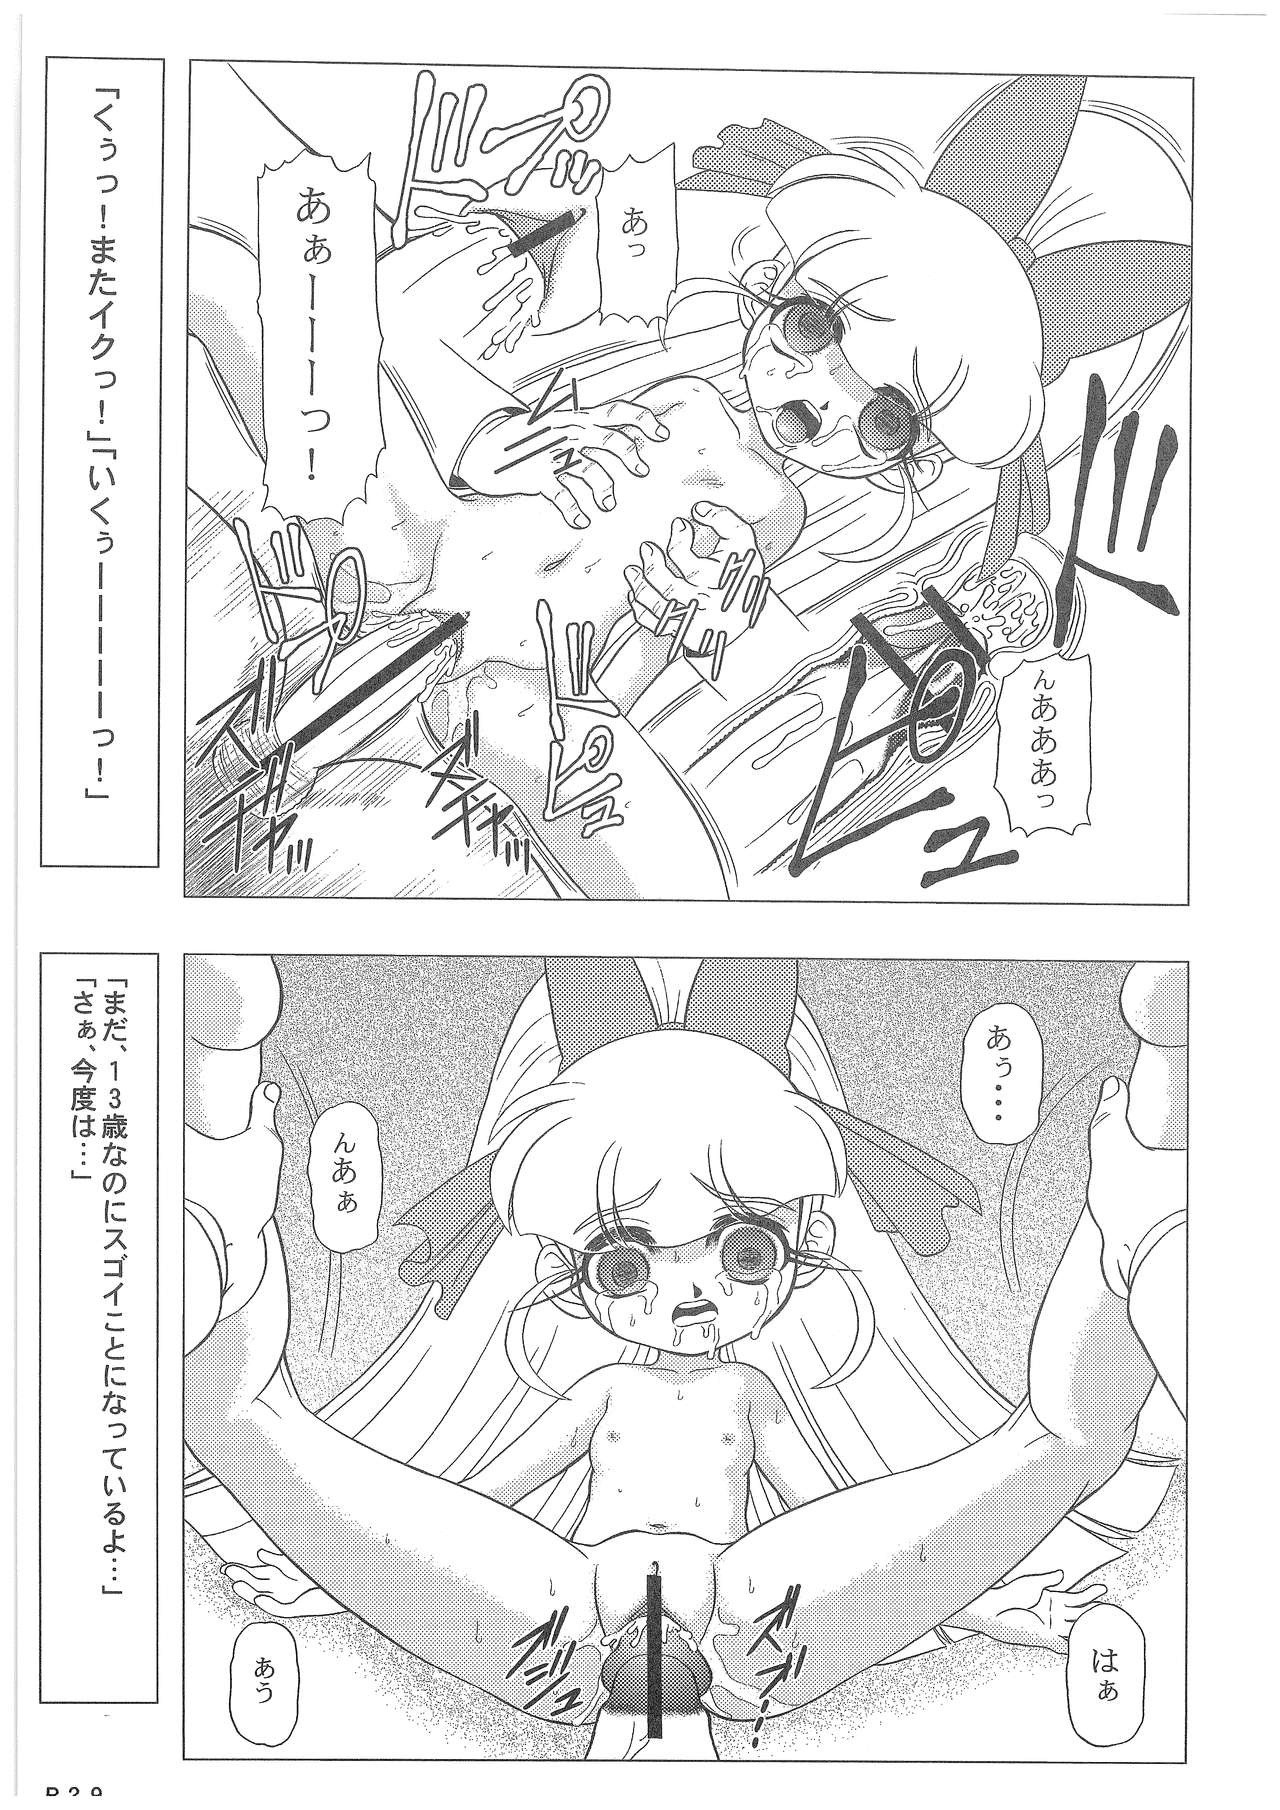 Power Puff Girls Z 001 hentai manga picture 27